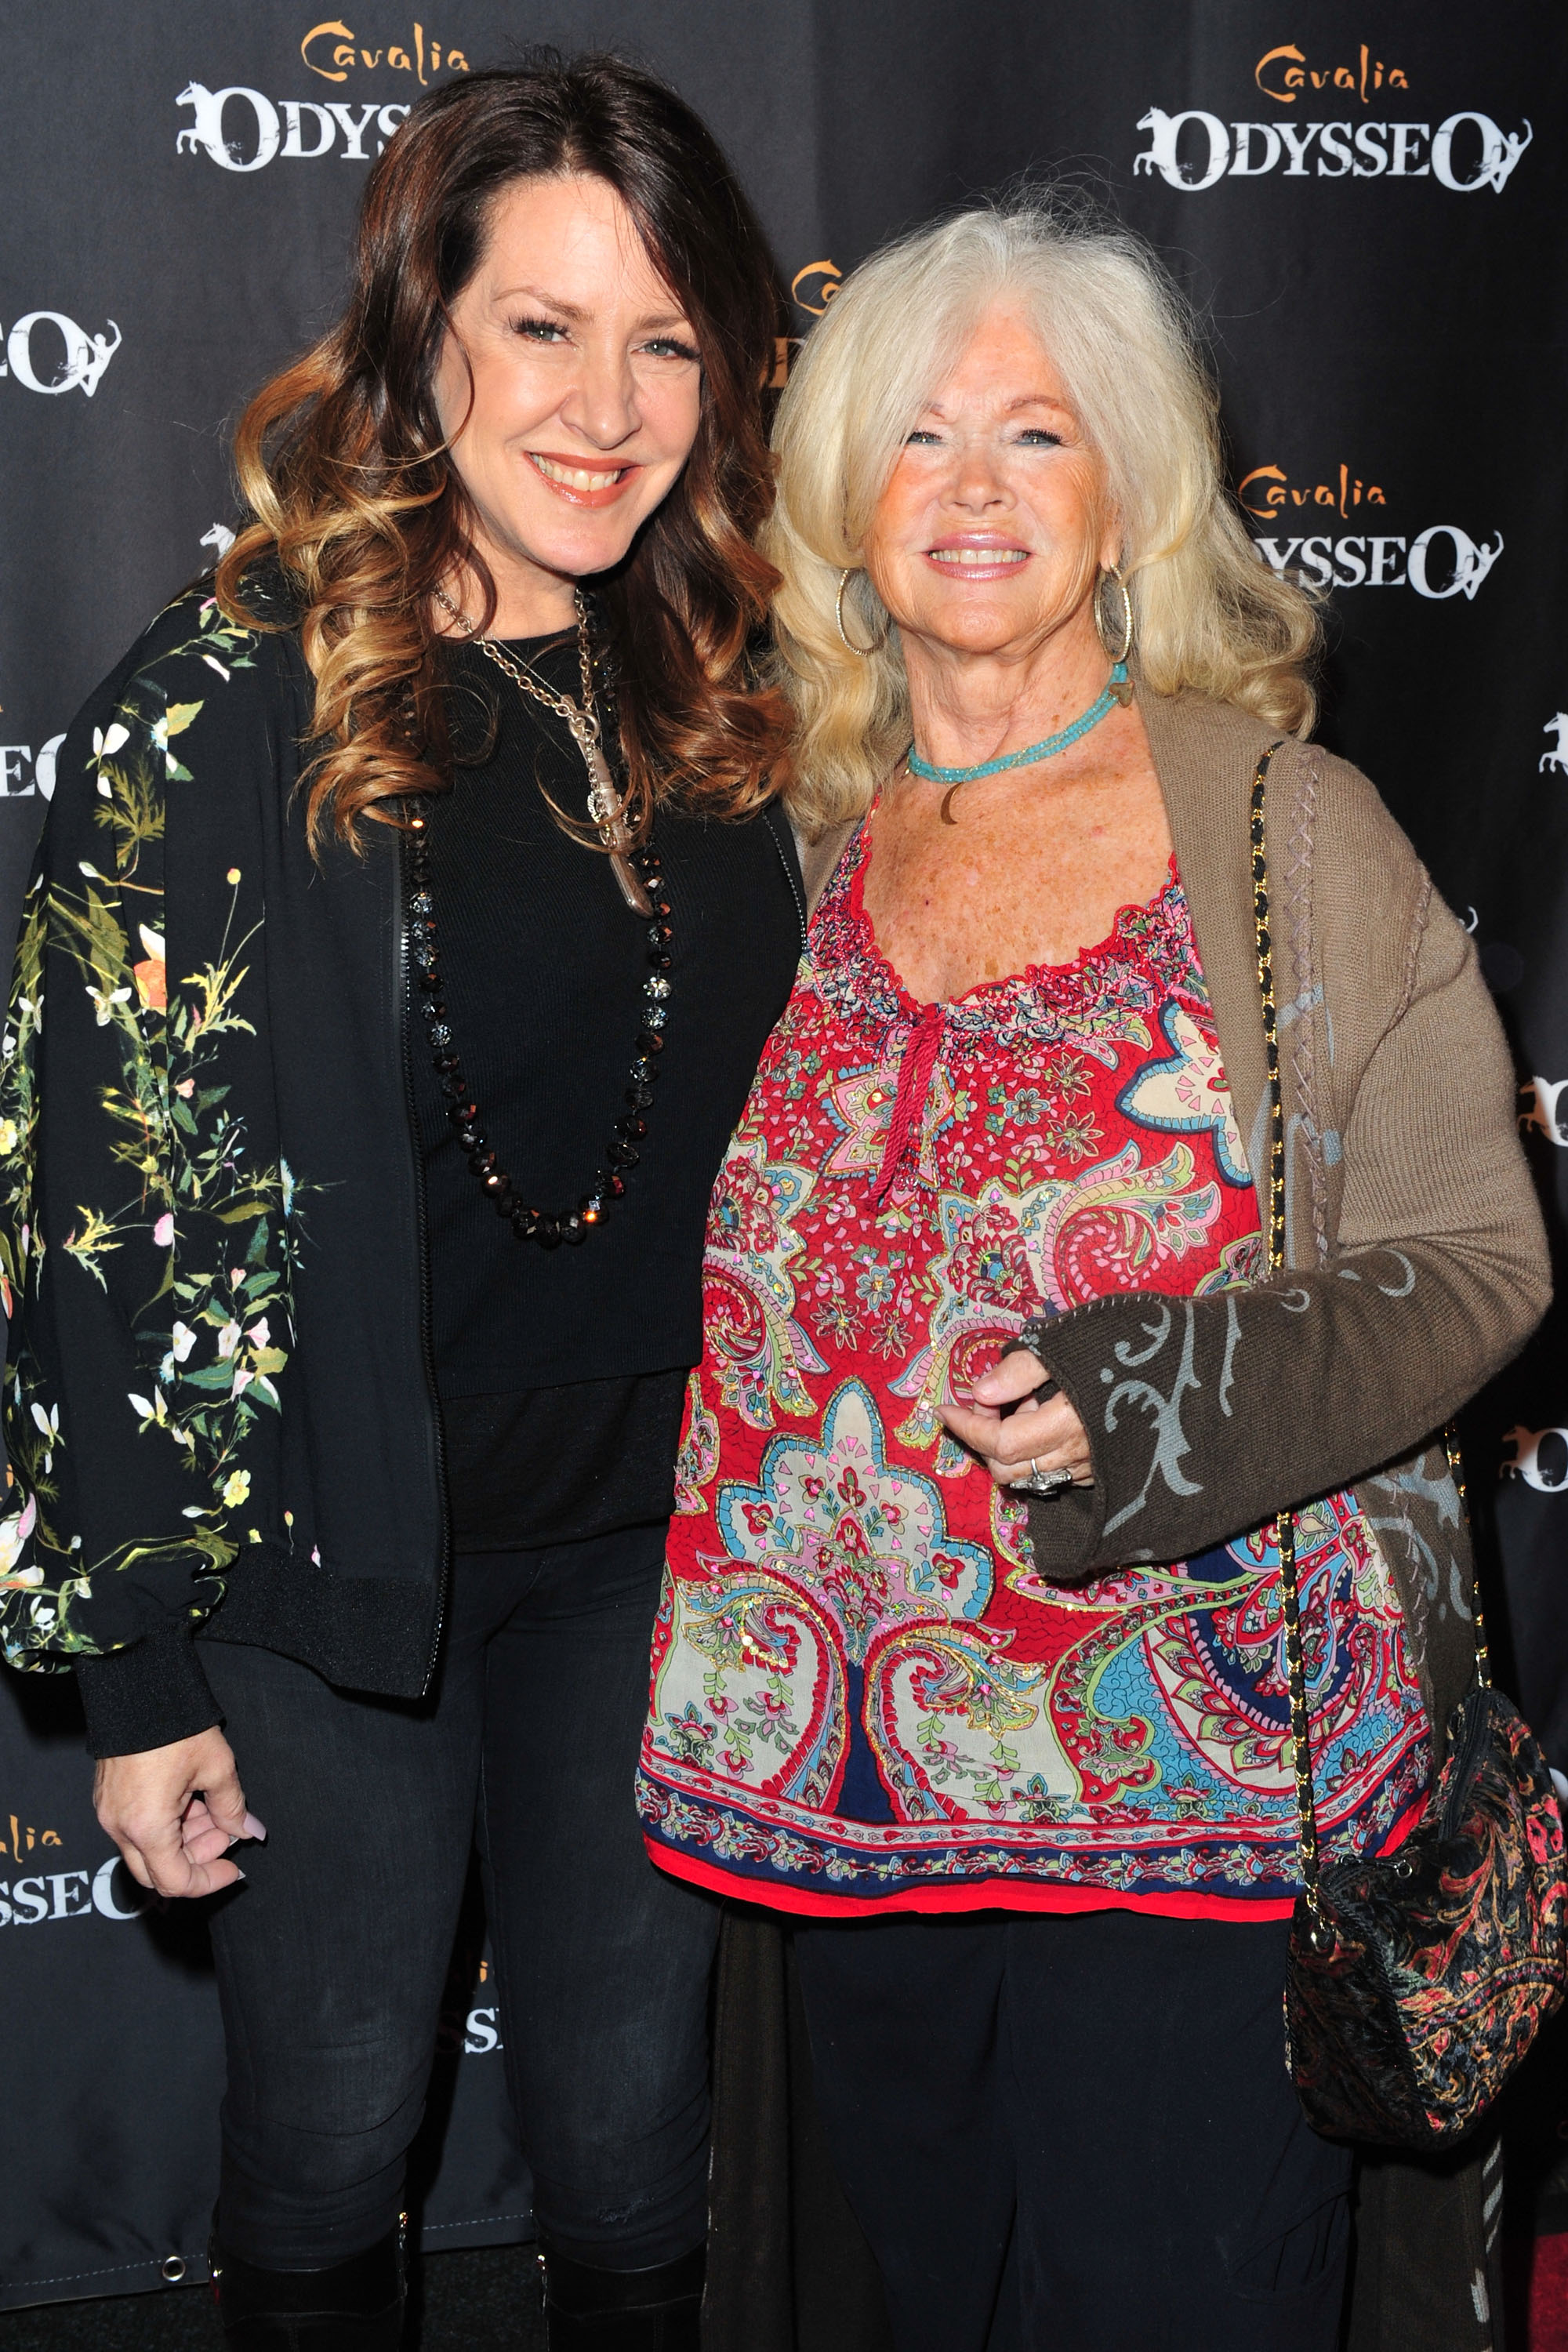 Schauspielerin Joely Fisher und ihre Mutter Connie Stevens kommen zur Premierenveranstaltung von "Odysseo By Cavalia" am 19. November 2016 in Irvine, Kalifornien | Quelle: Getty Images